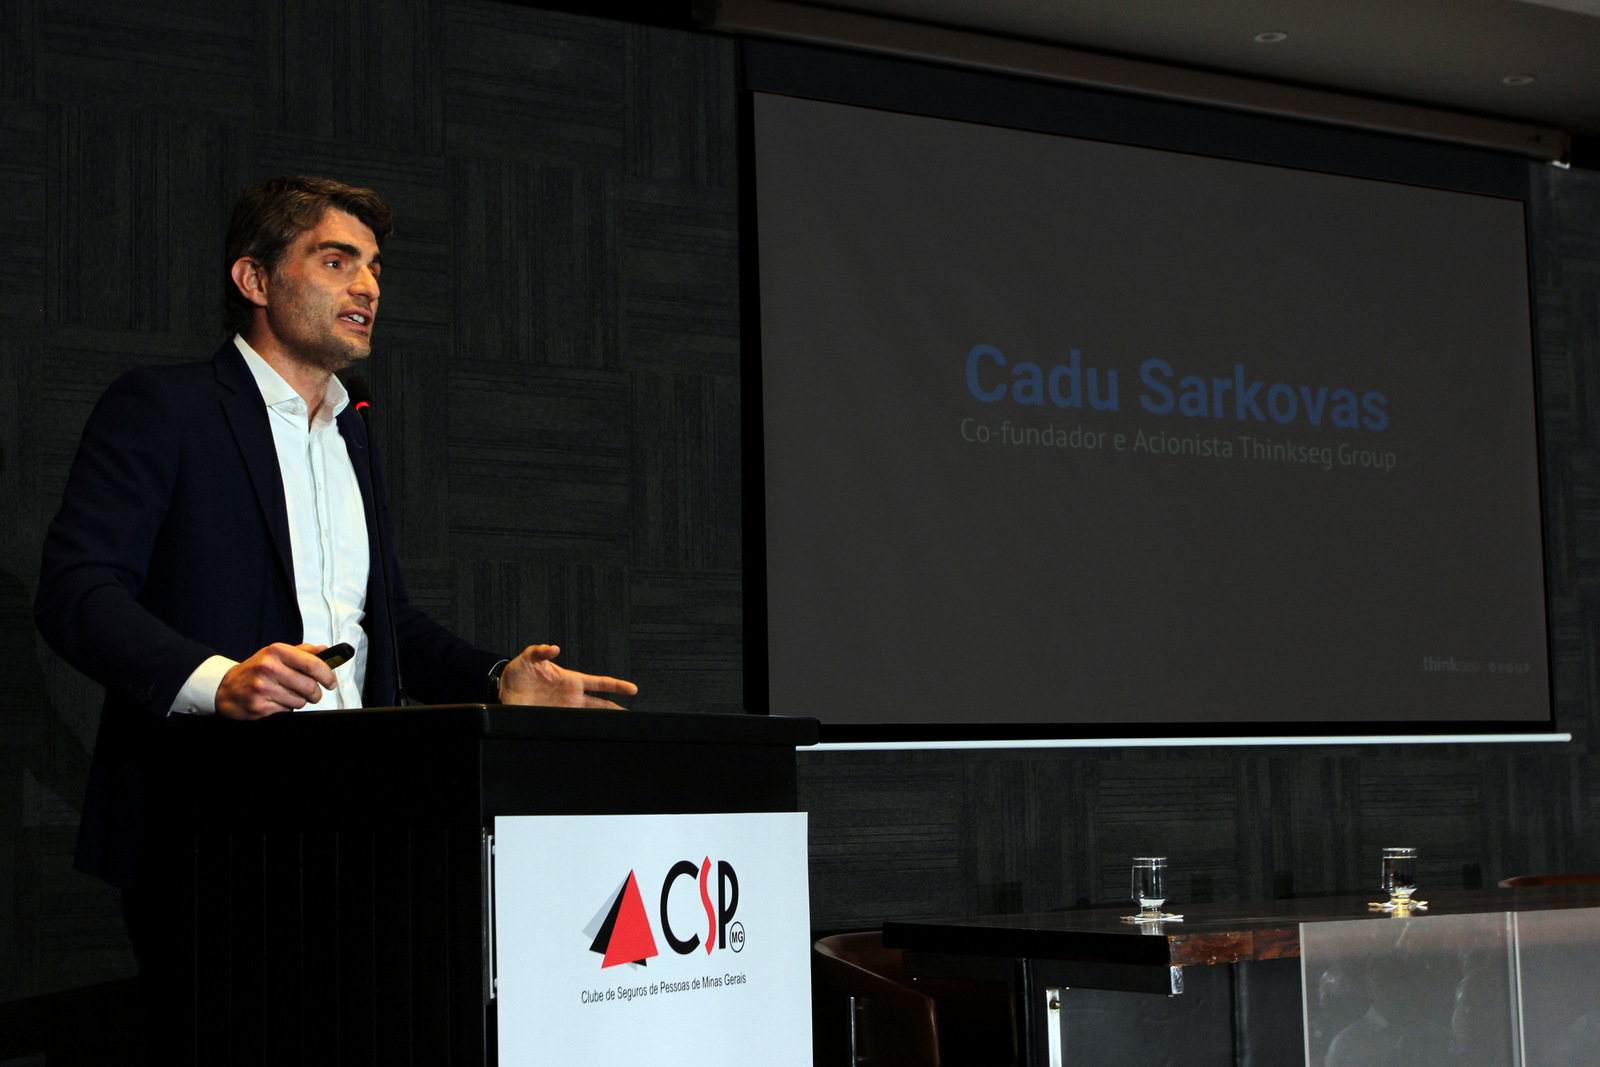 Cadu Sarkovas: “o mundo mudou, assim como a percepção do cliente. Não é possível vender seguros como fazíamos há anos atrás”.